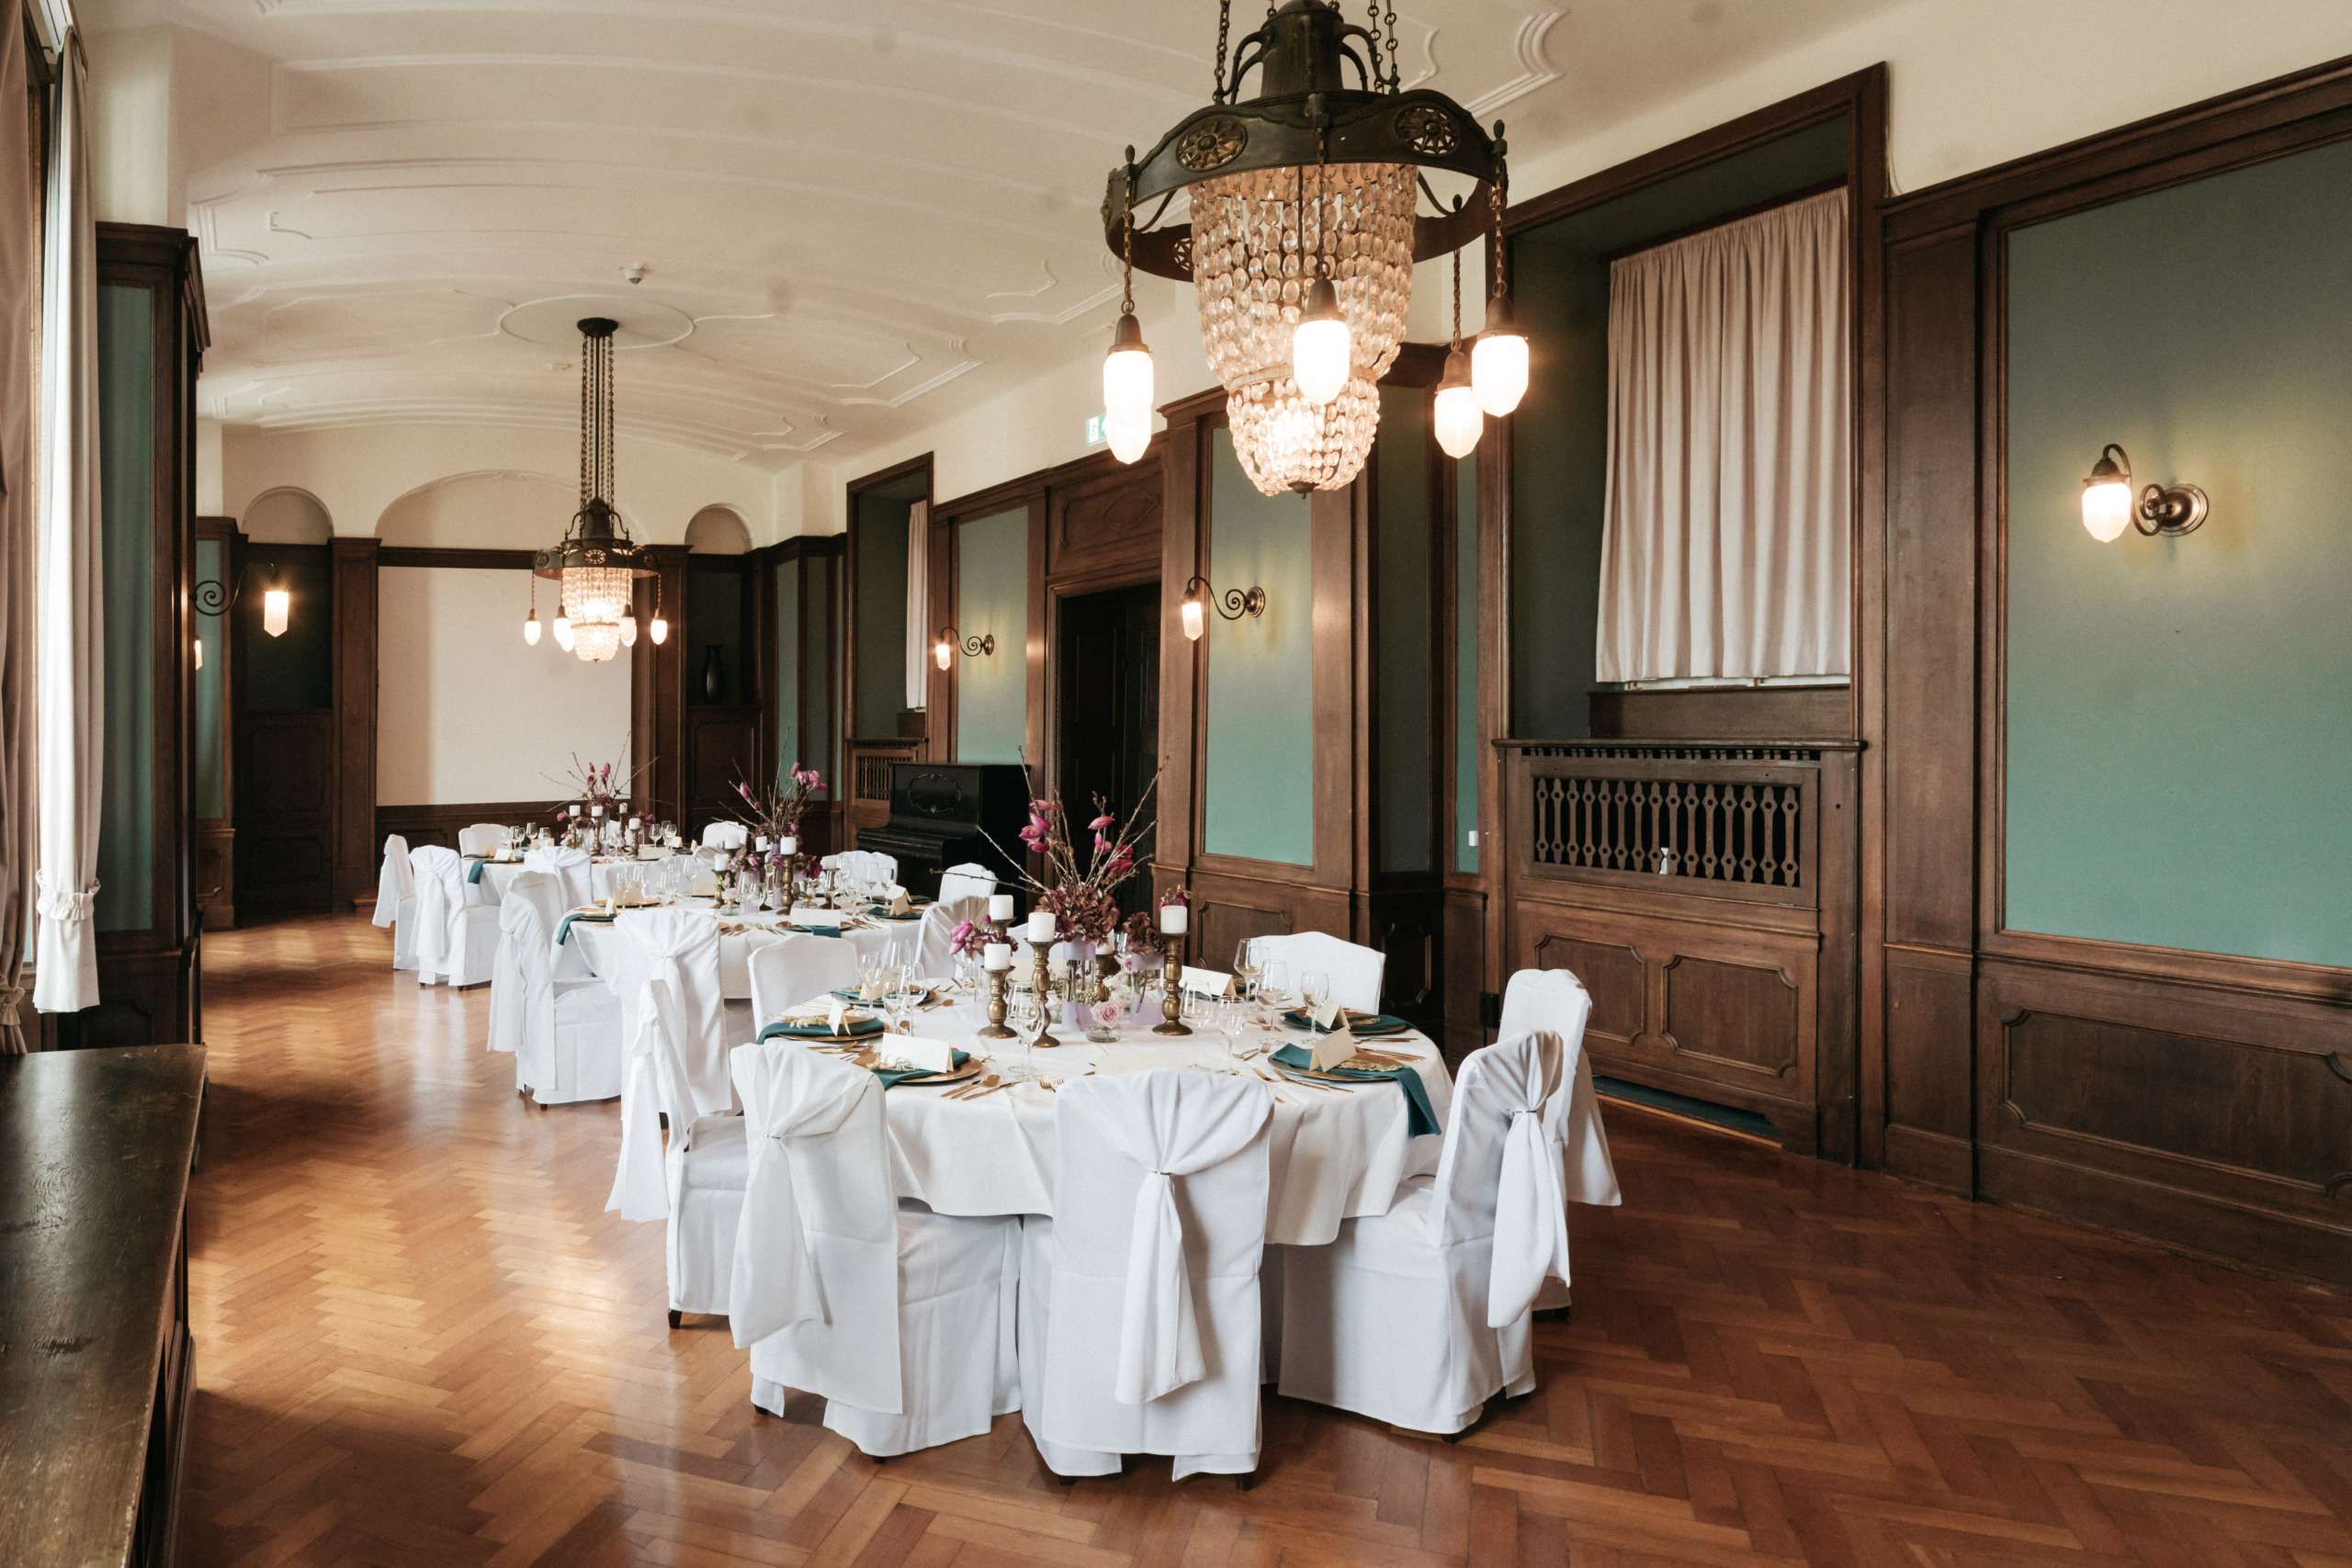 Jugendstilsaal im Schlosshotel Horneck als Hochzeitslocation